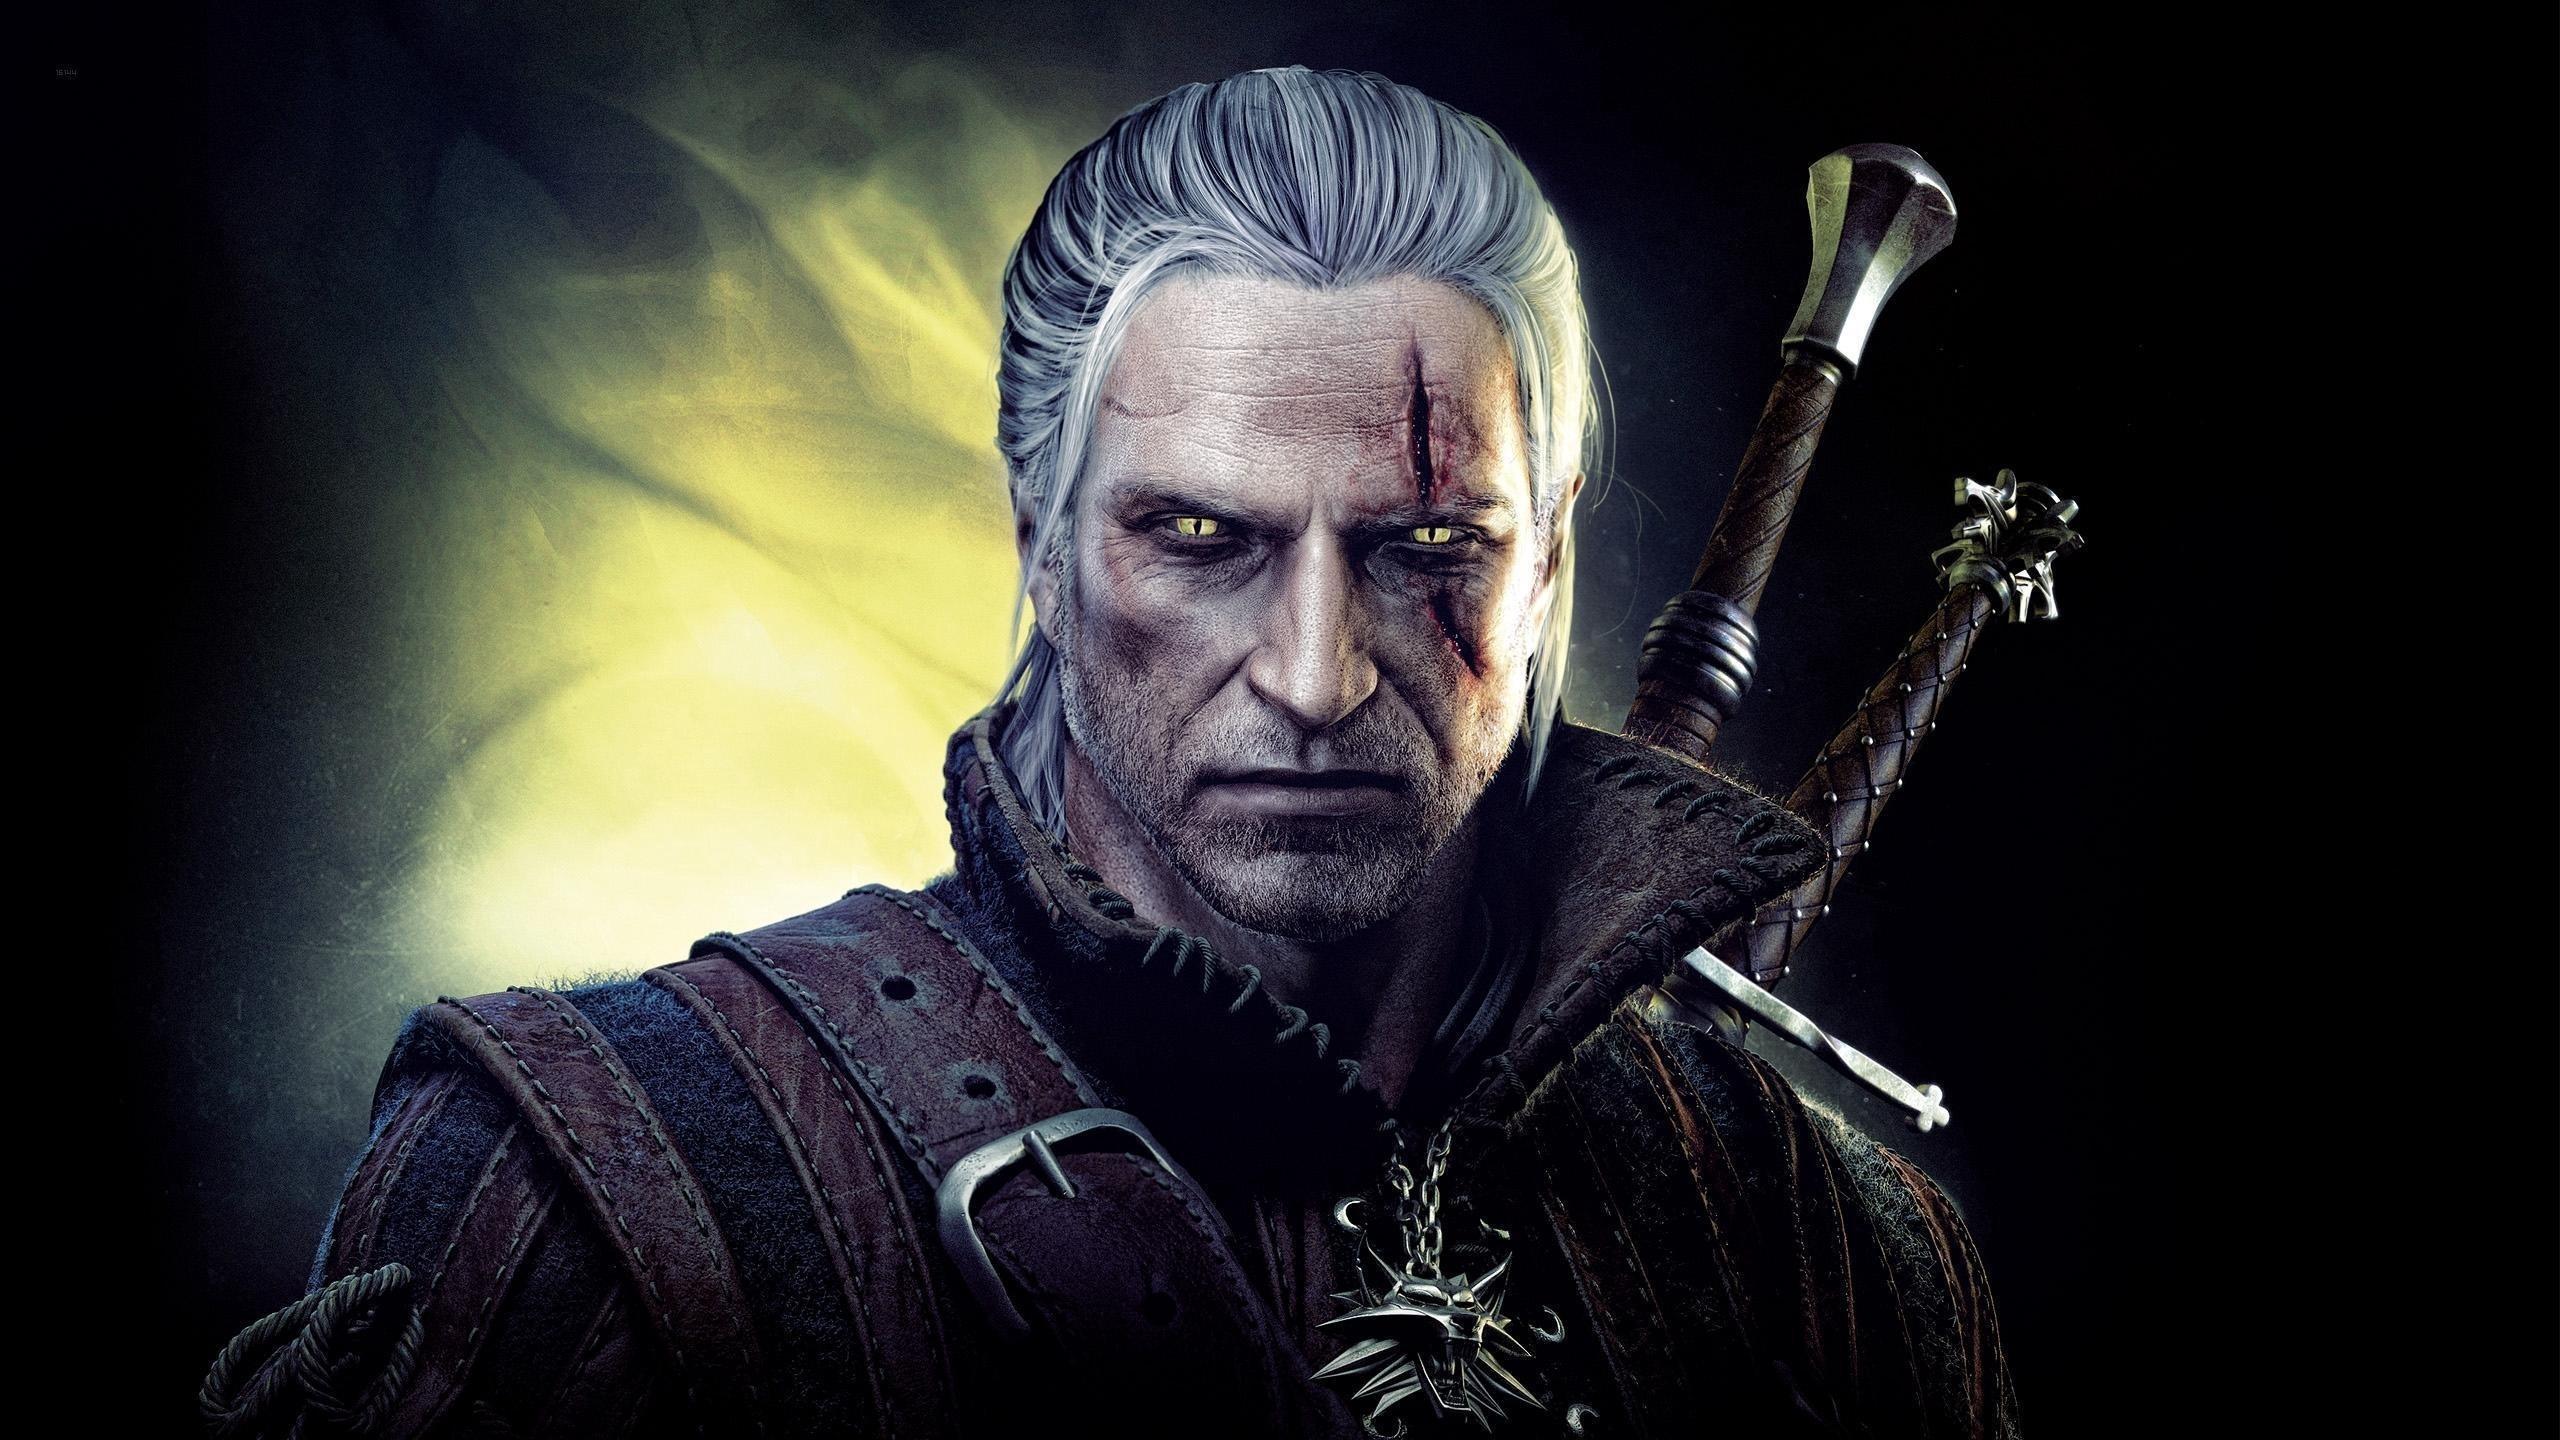 2560 x 1440 · jpeg - Geralt Witcher Wallpapers - Wallpaper Cave